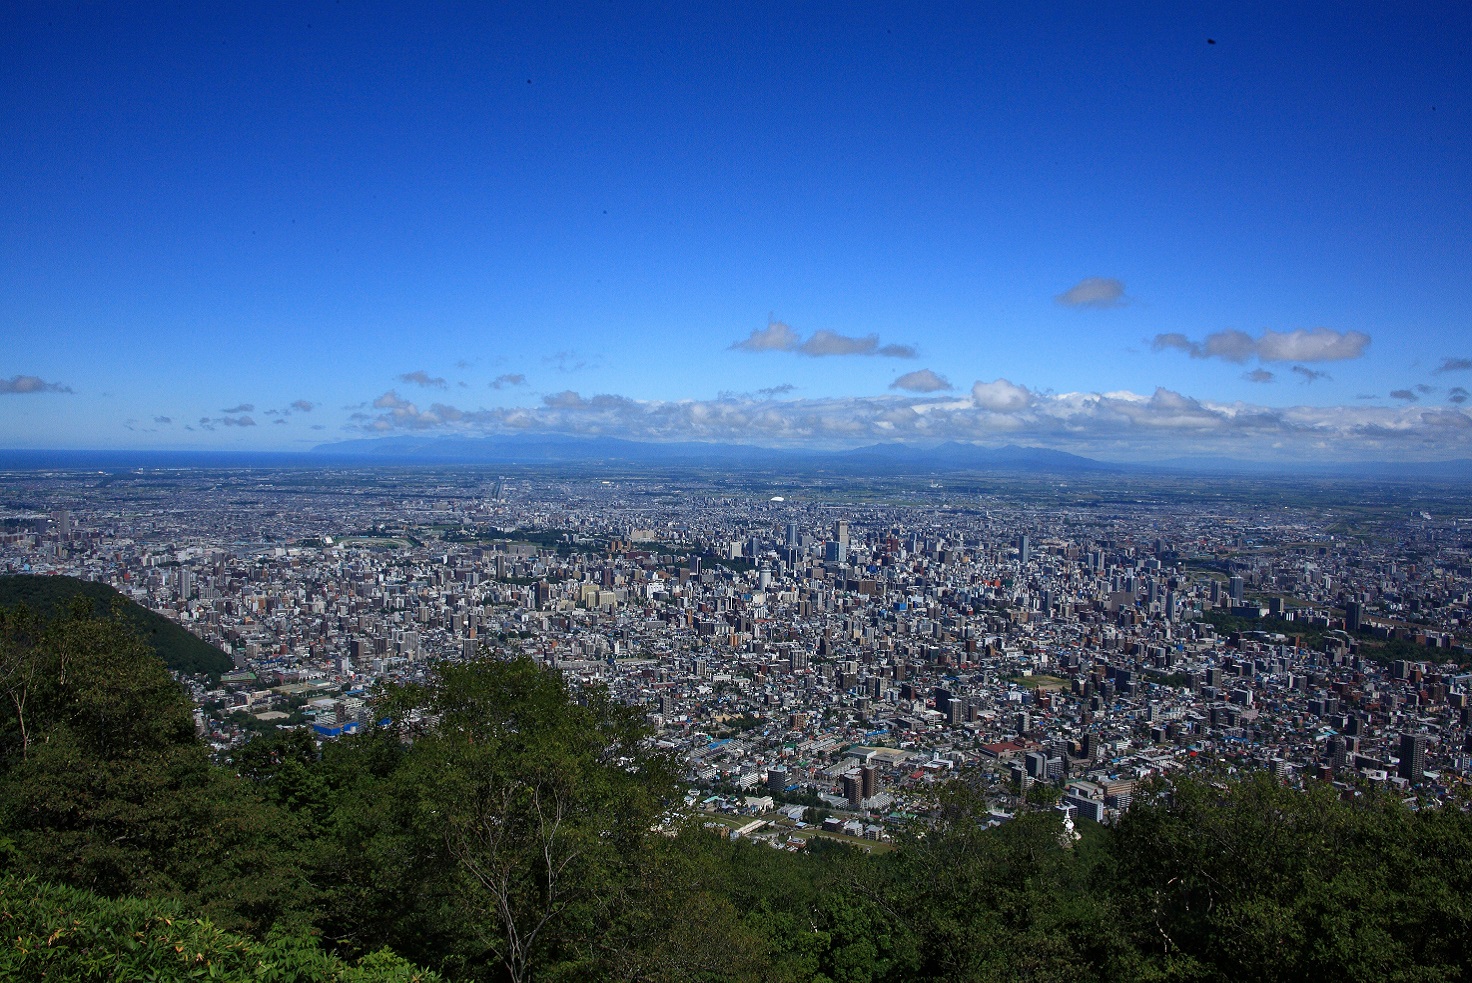 札幌藻岩山展望台